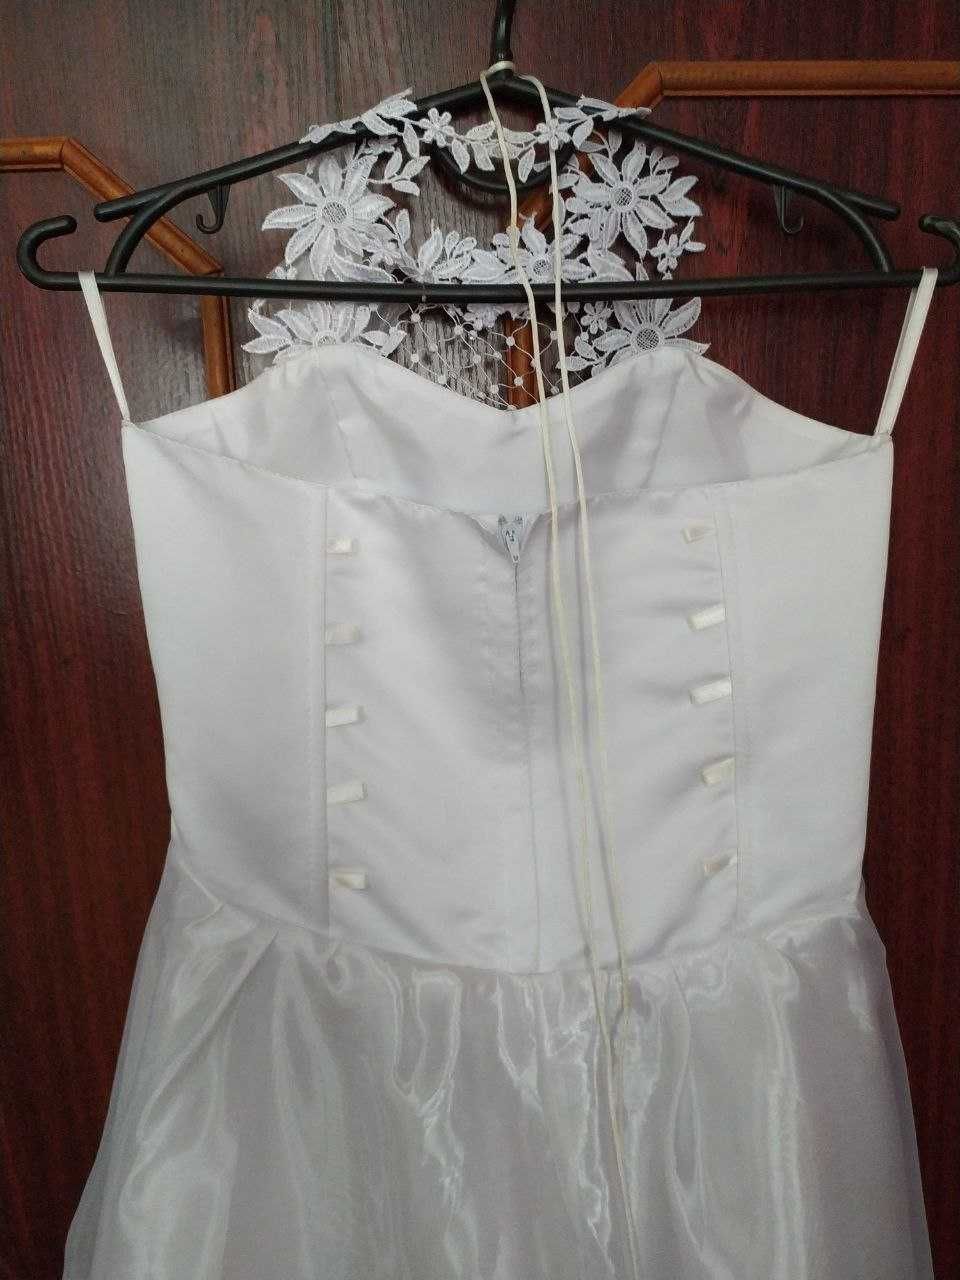 Біле плаття для дівчинки